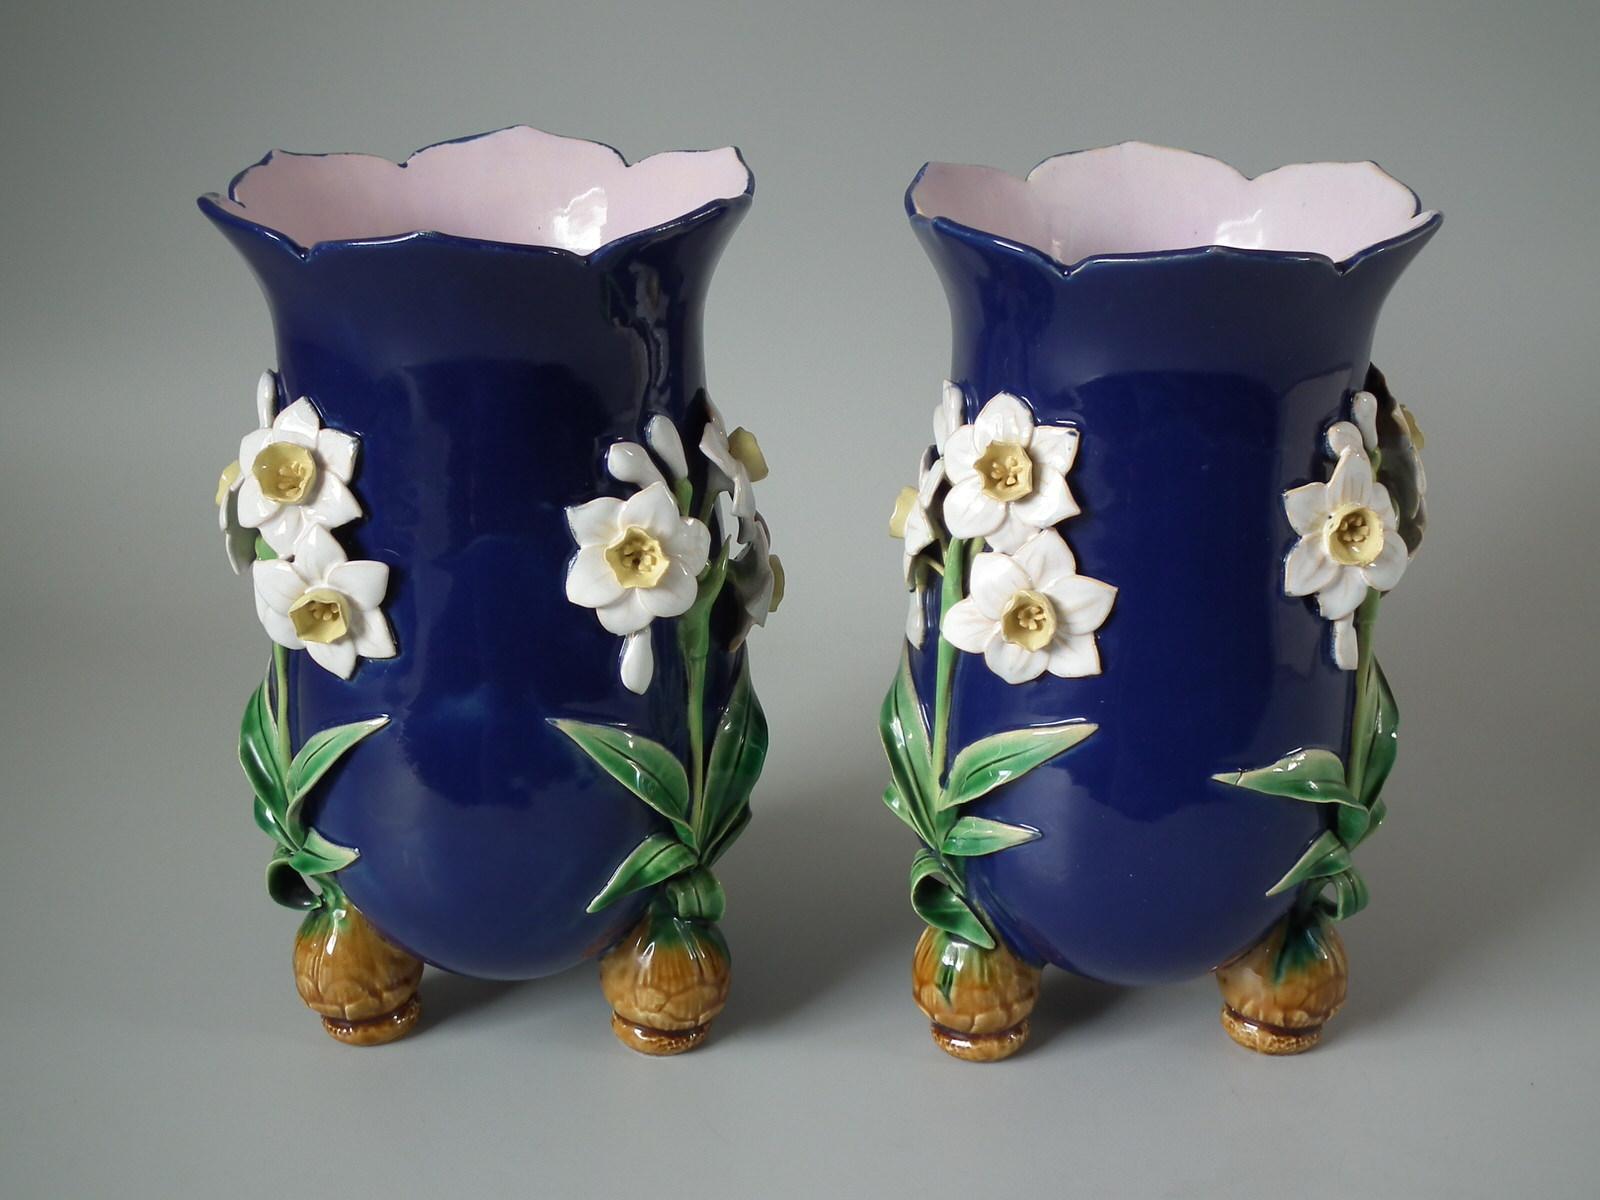 Paire de vases en majolique de Minton représentant des jonquilles et reposant sur des pieds en forme de bulbe. Version bleu cobalt au sol. Coloration : le bleu de cobalt, le vert et le blanc sont prédominants. La pièce porte les marques du fabricant